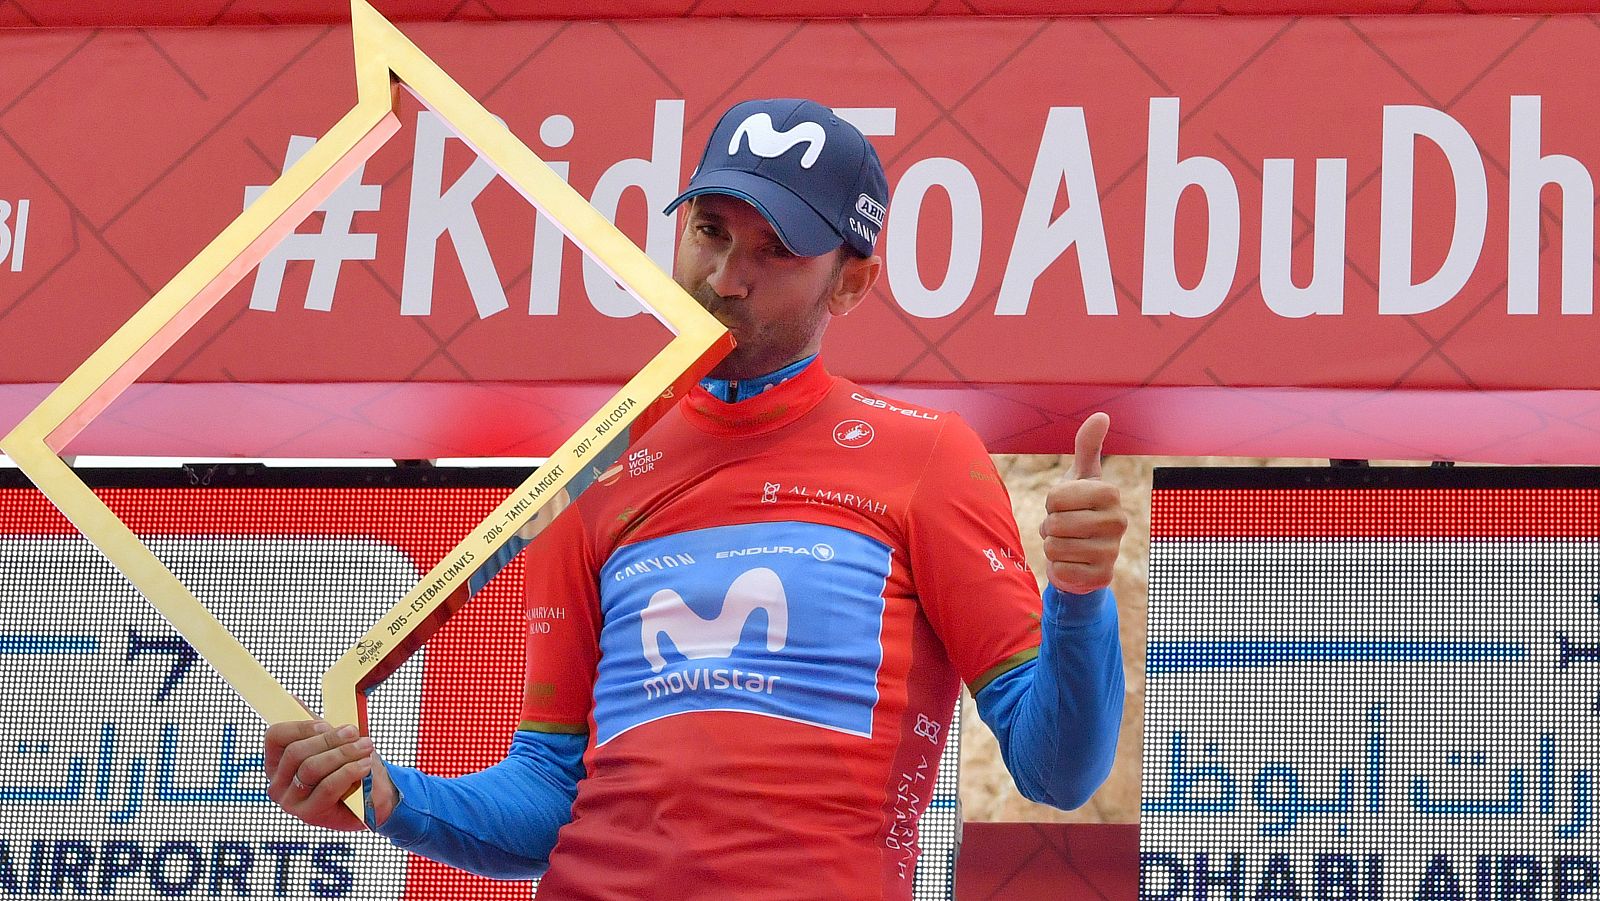 El ciclista murciano Alejandor Valverde celebra la victoria en Abu Dabi.